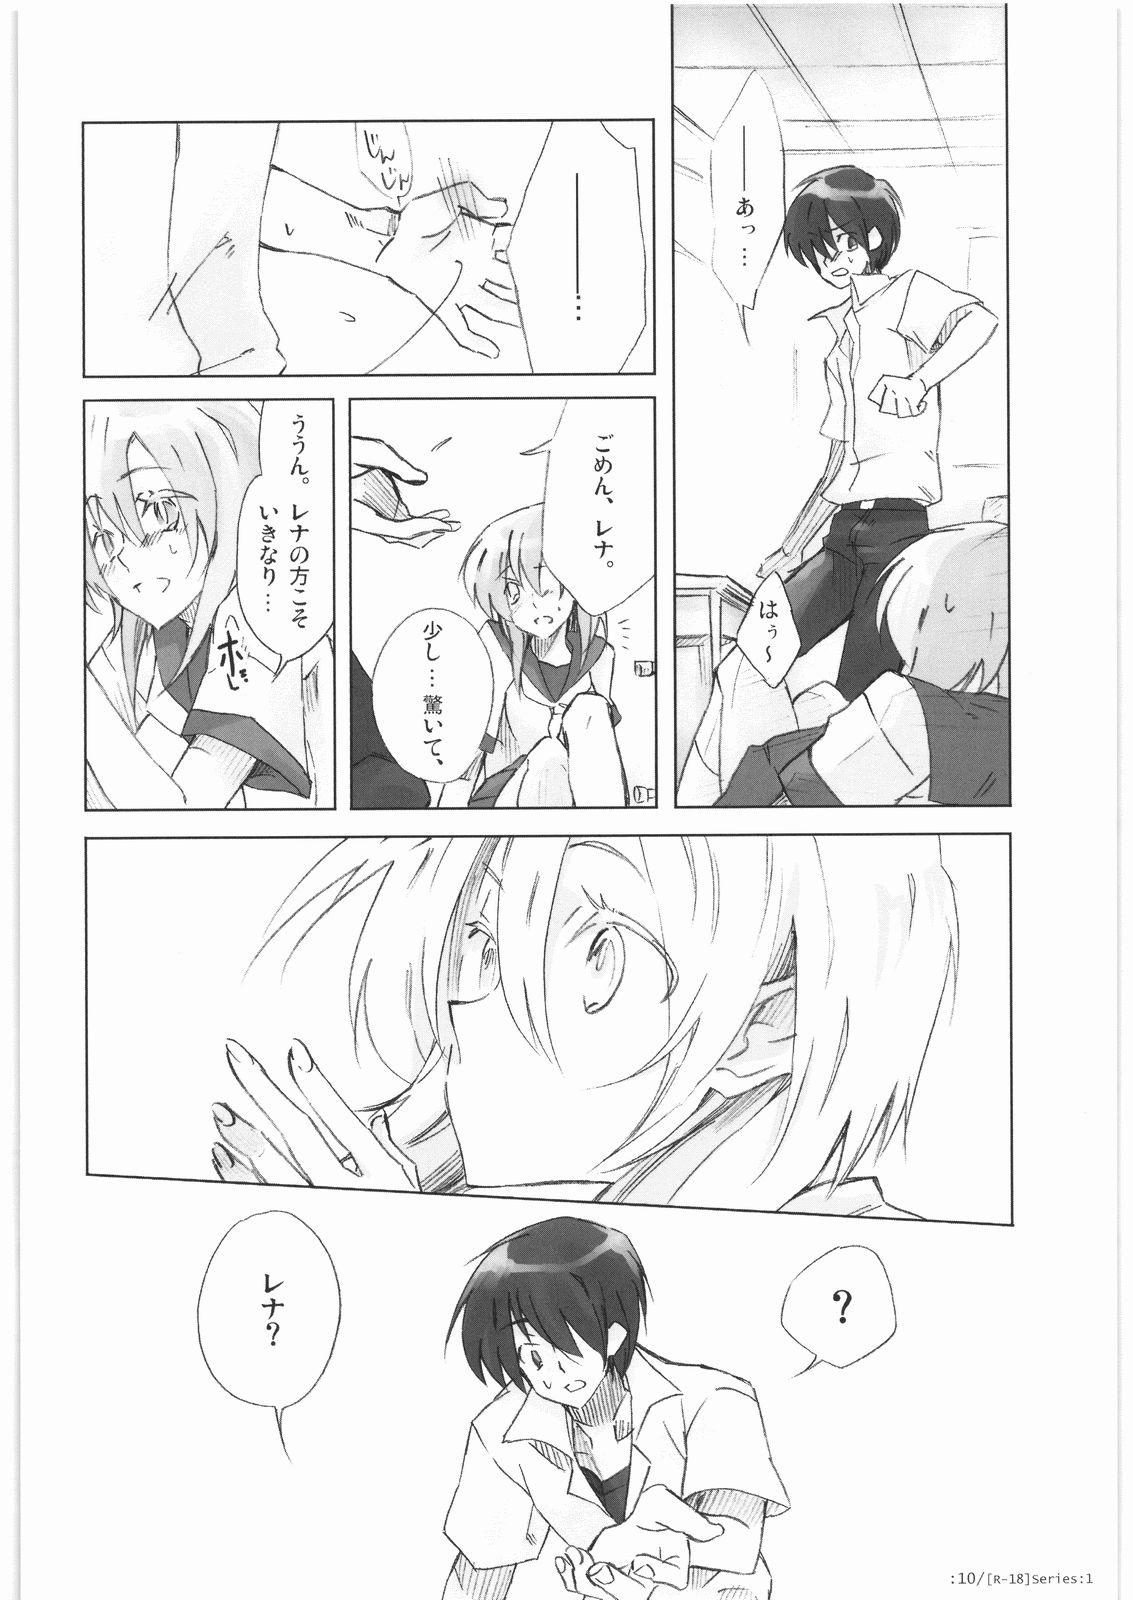 Vergon R-18 Series:1 - Higurashi no naku koro ni Mujer - Page 9